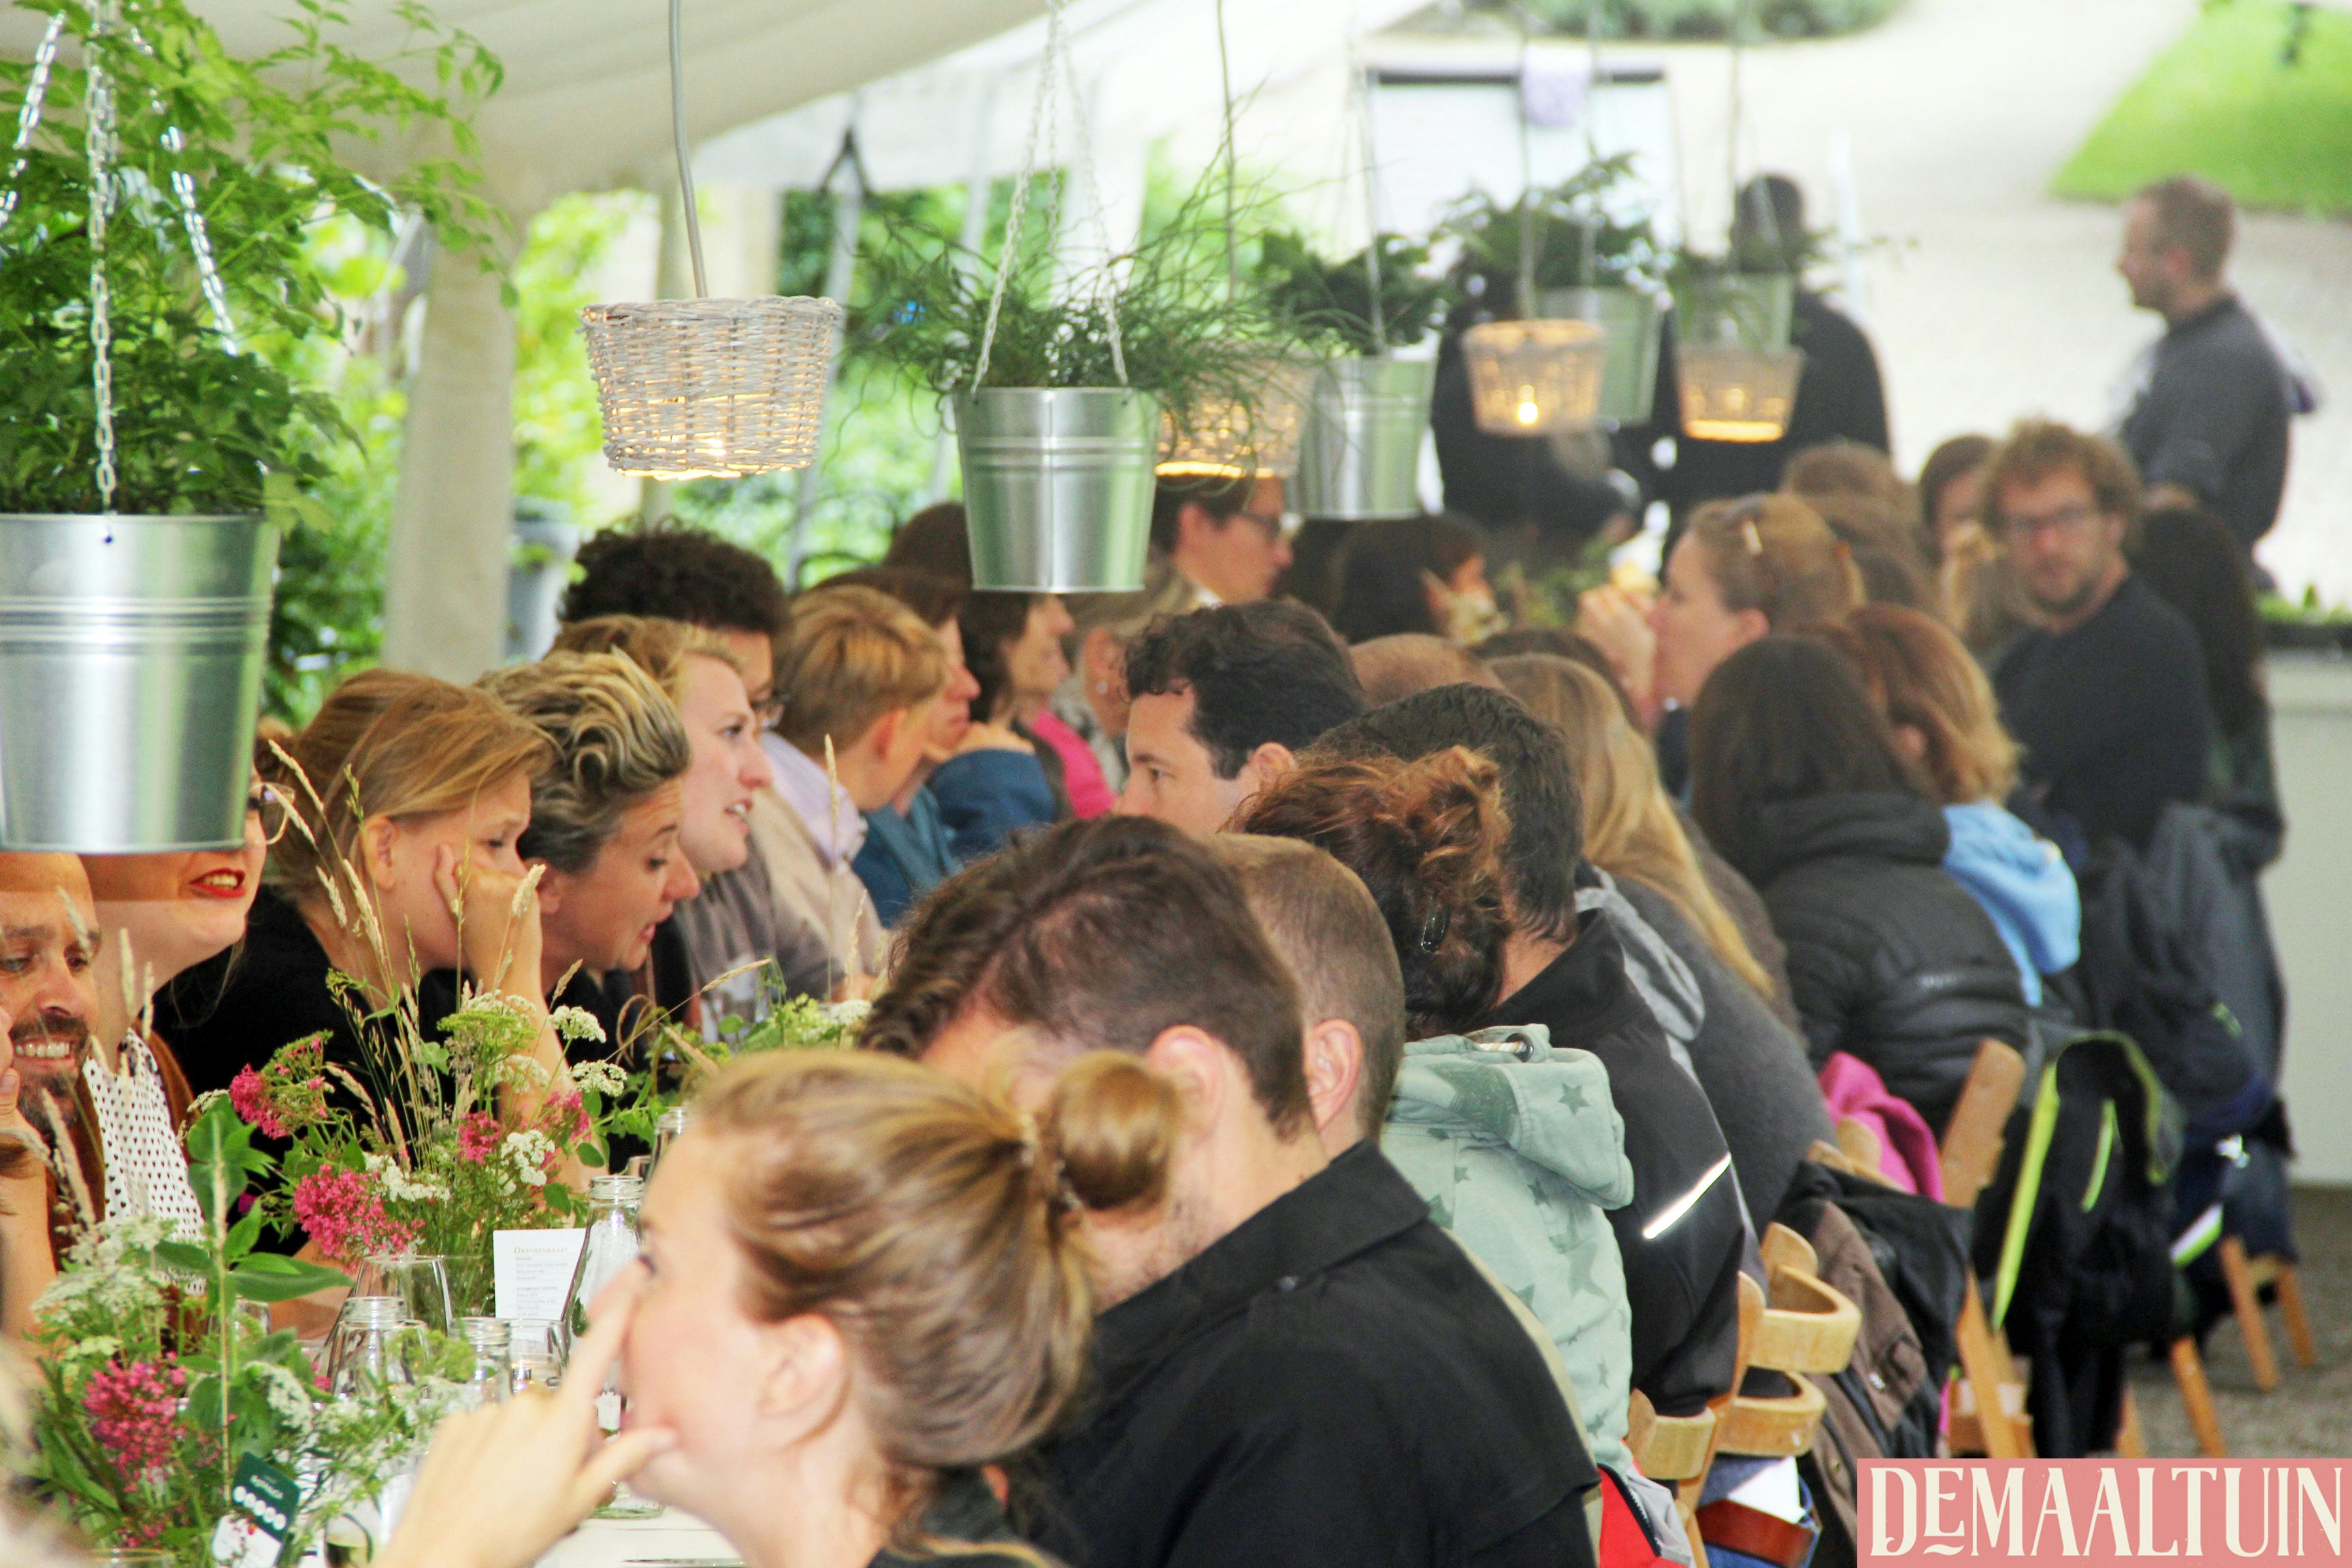 Succesvolle pop-up in Botanische tuinen: één tafel, 800 personen